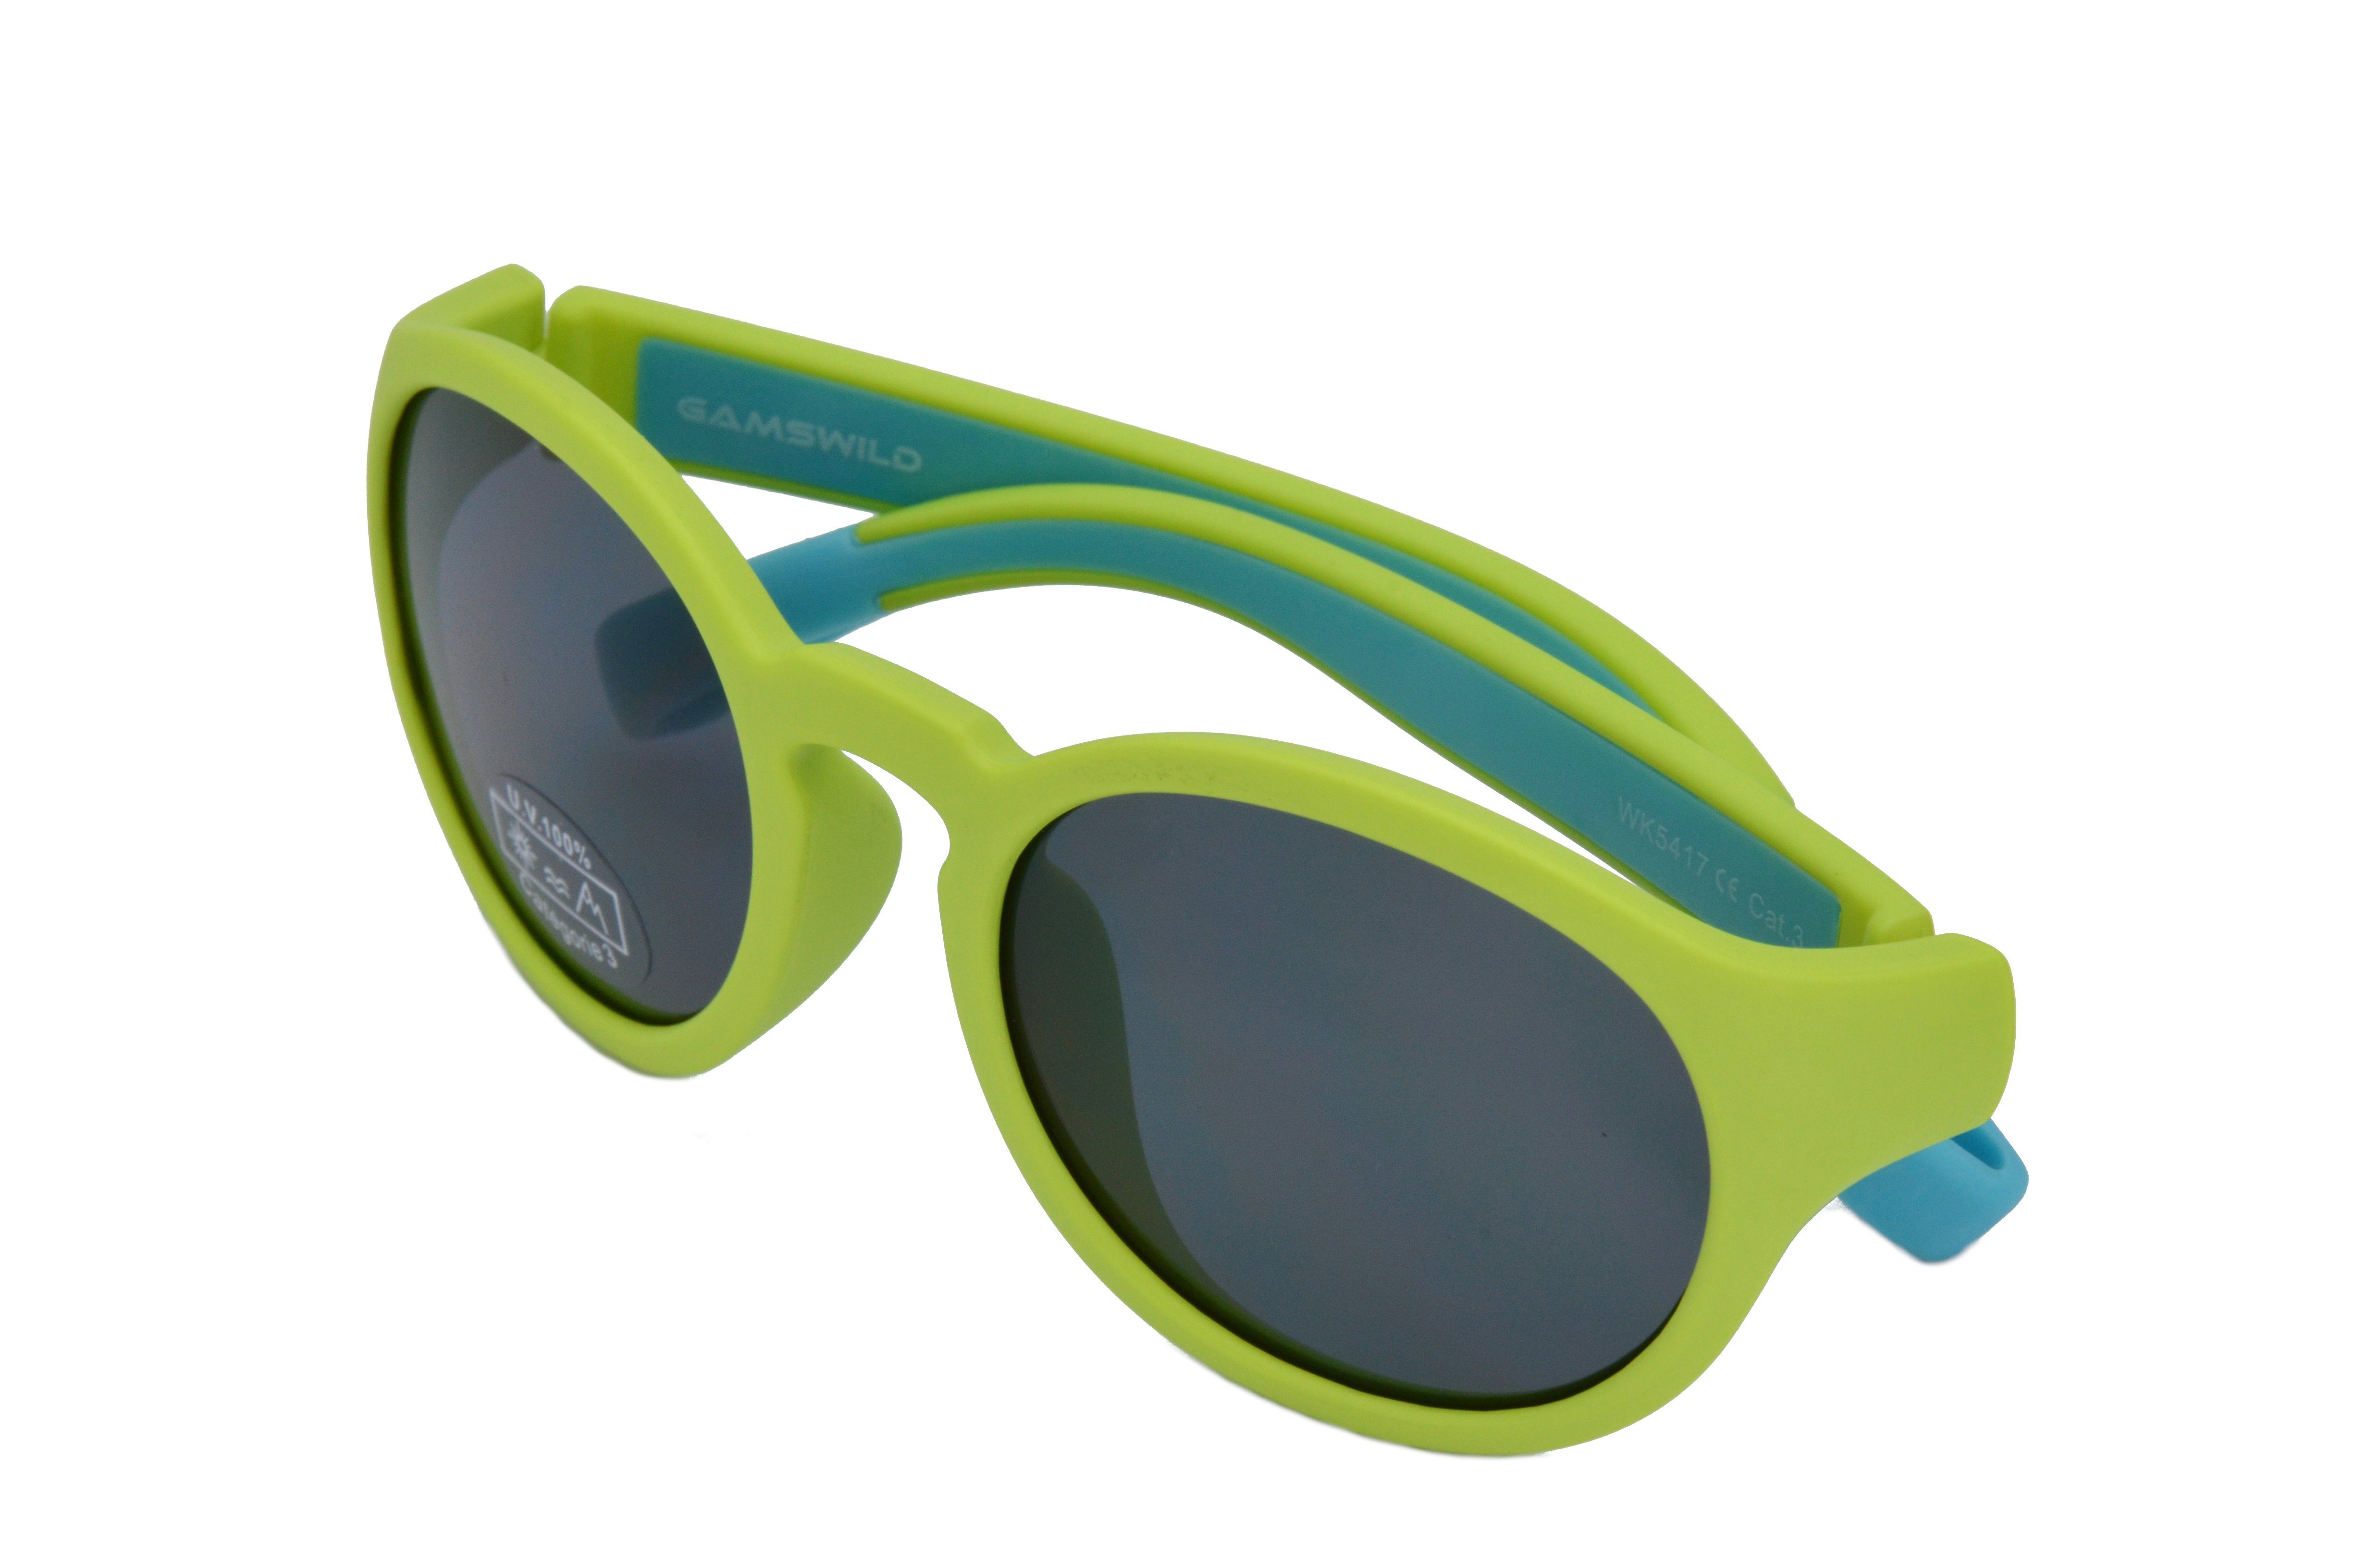 Jungen blau, 5-10 Unisex, Sonnenbrille lila kids Jahre grün, Kinderbrille Kleinkindbrille WK5417 Gamswild Mädchen GAMSKIDS